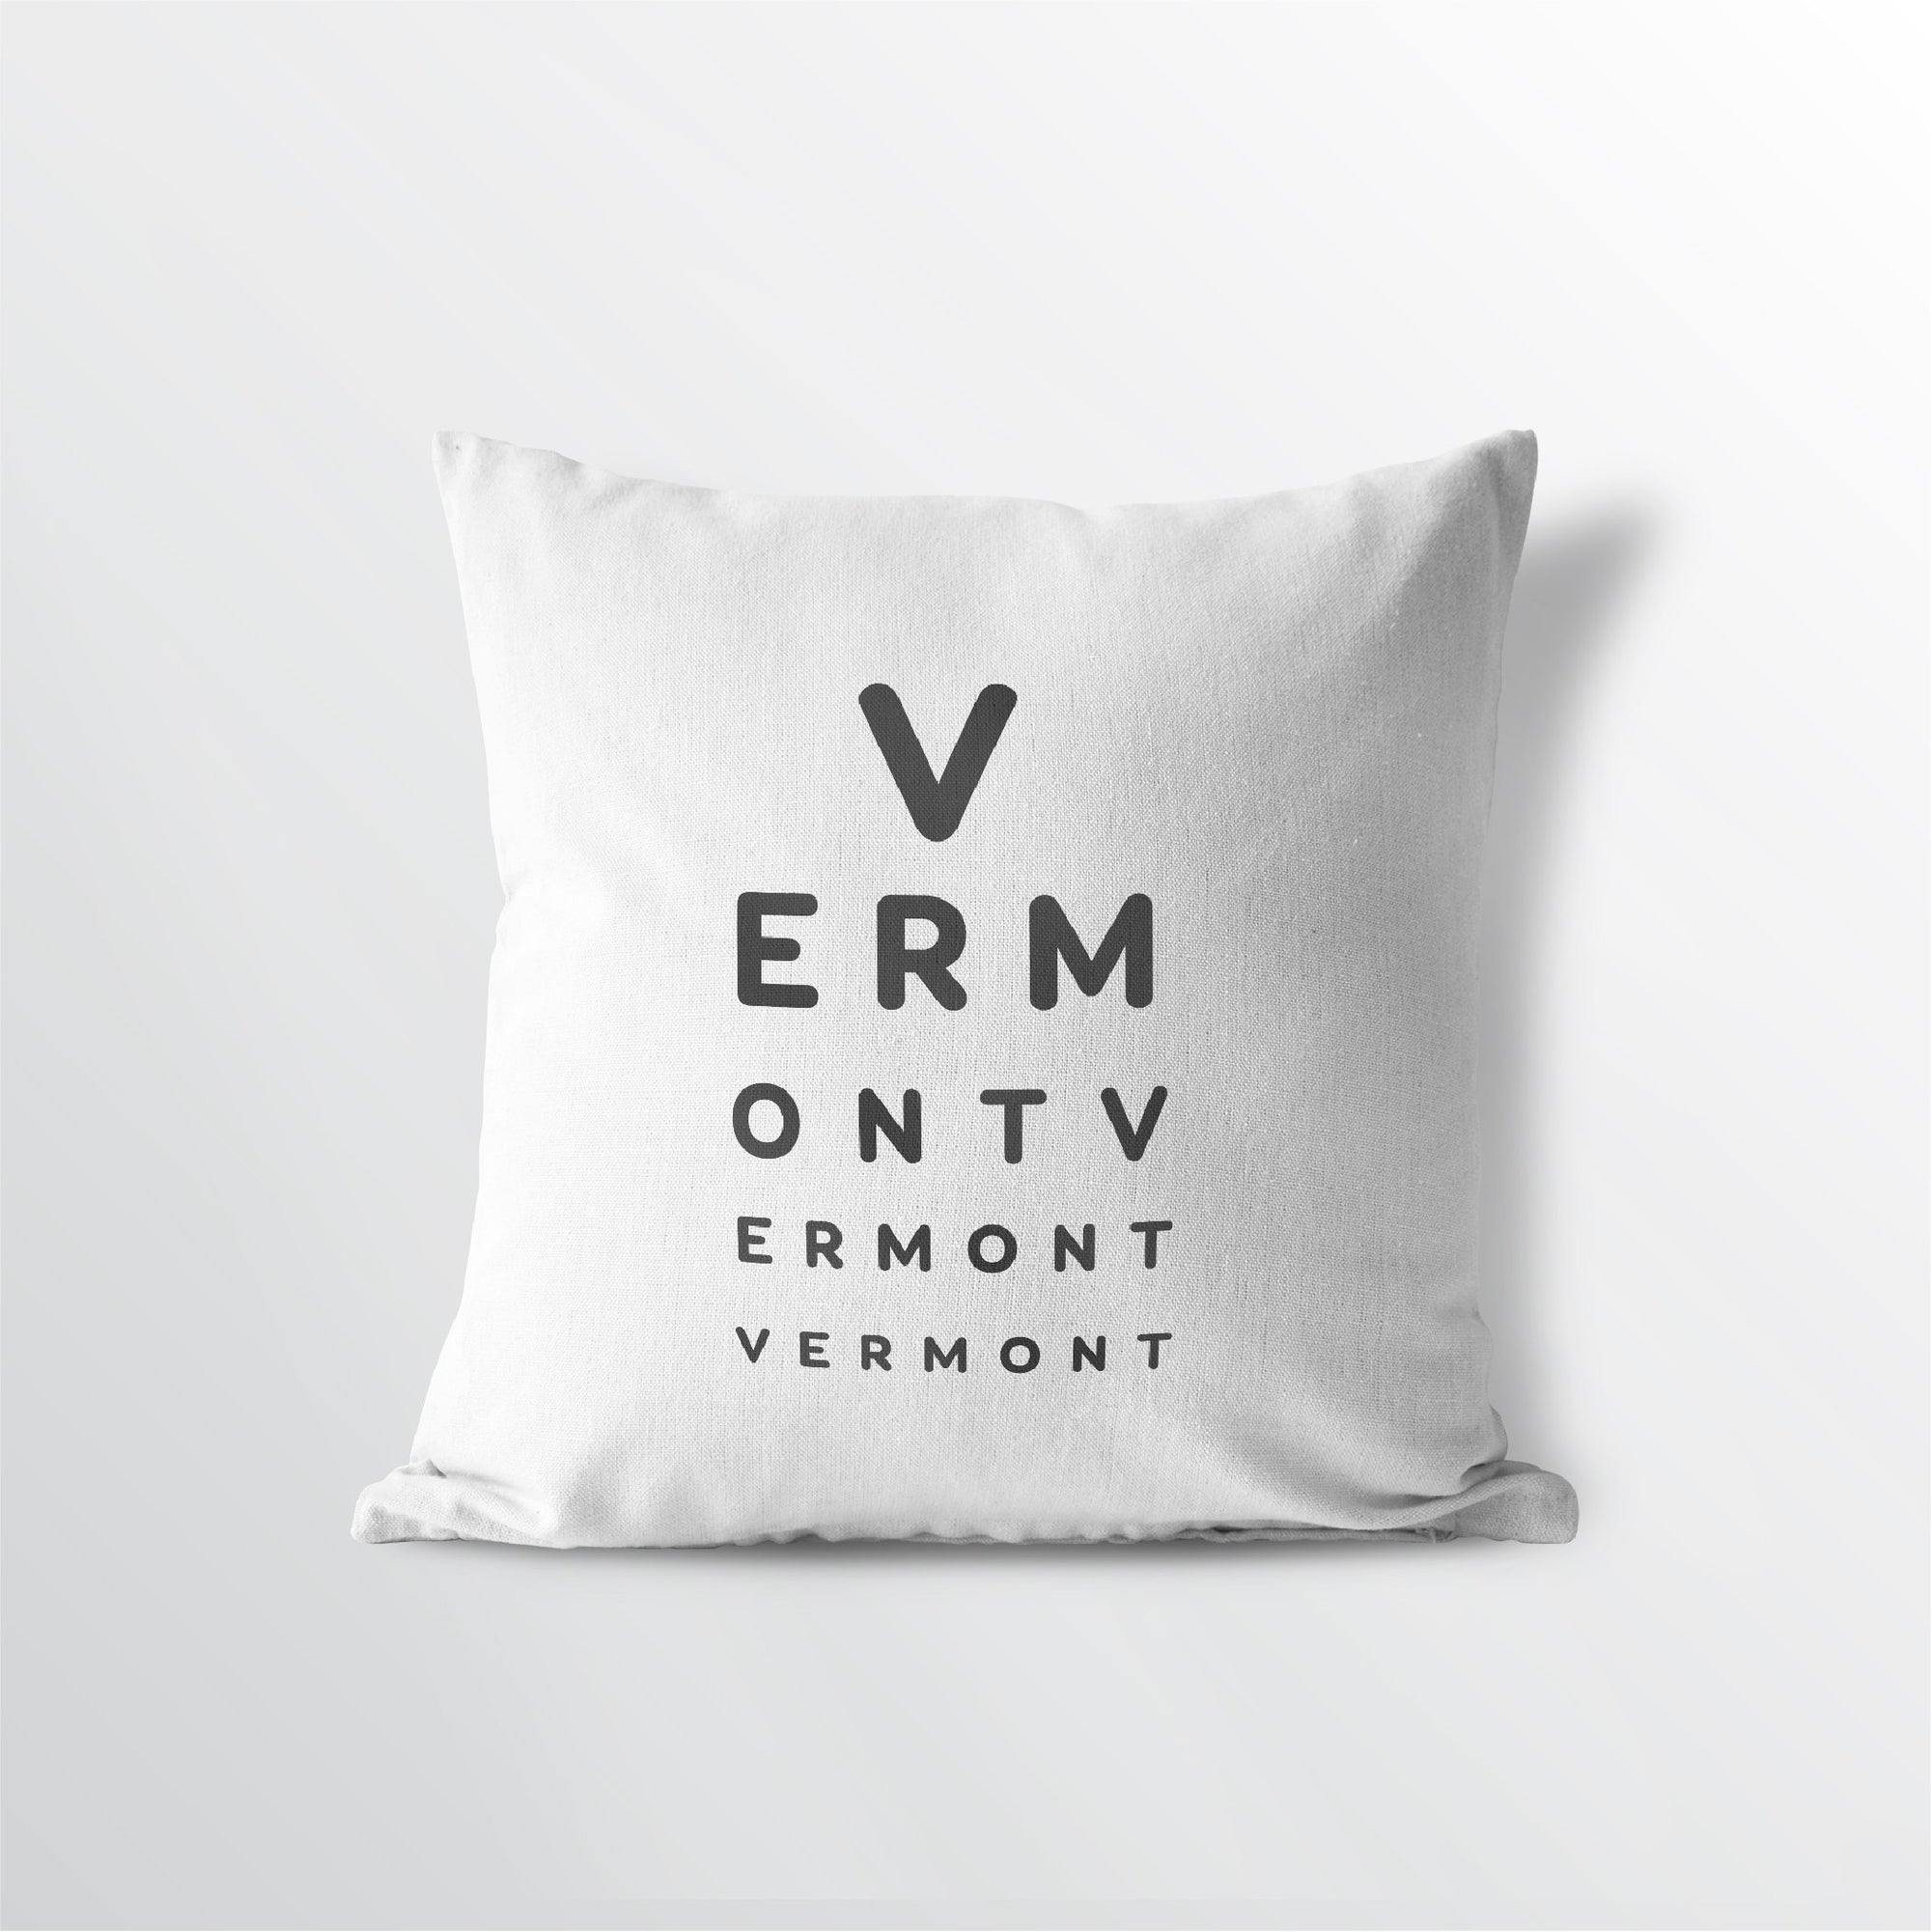 Vermont "Eye Exam" Throw Pillow